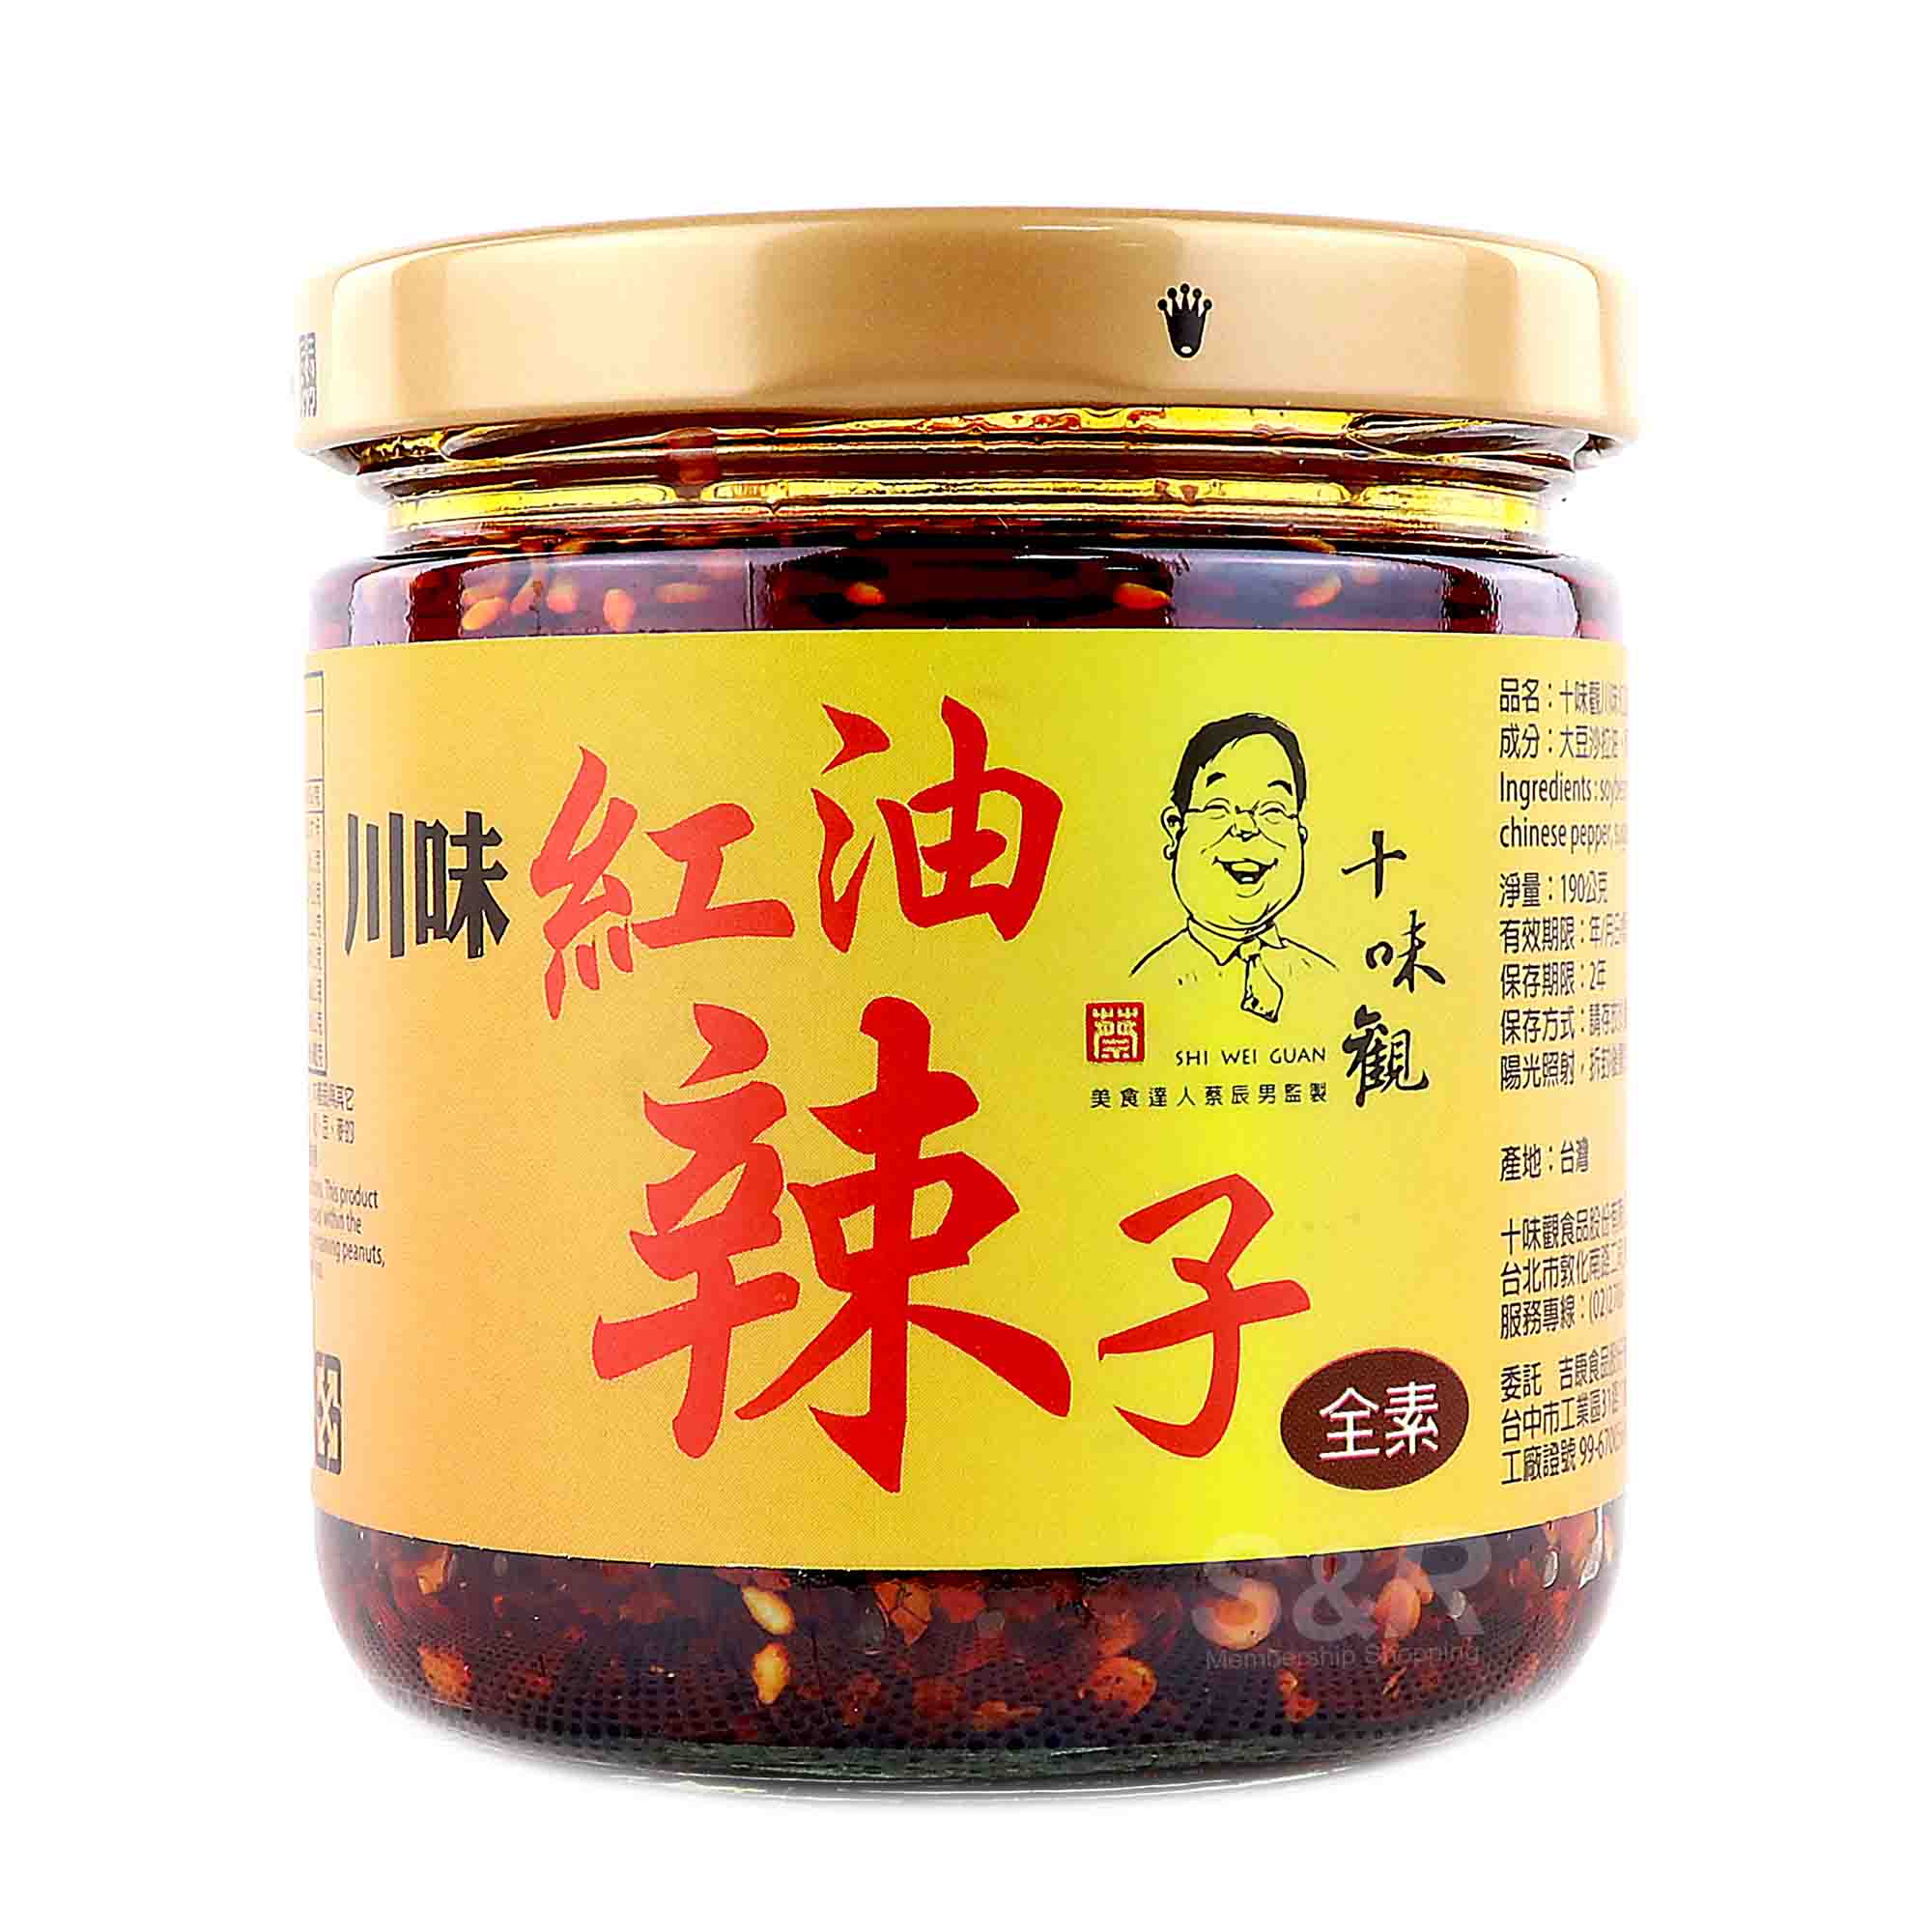 Shi Wei Guan Chili Sauce 190g